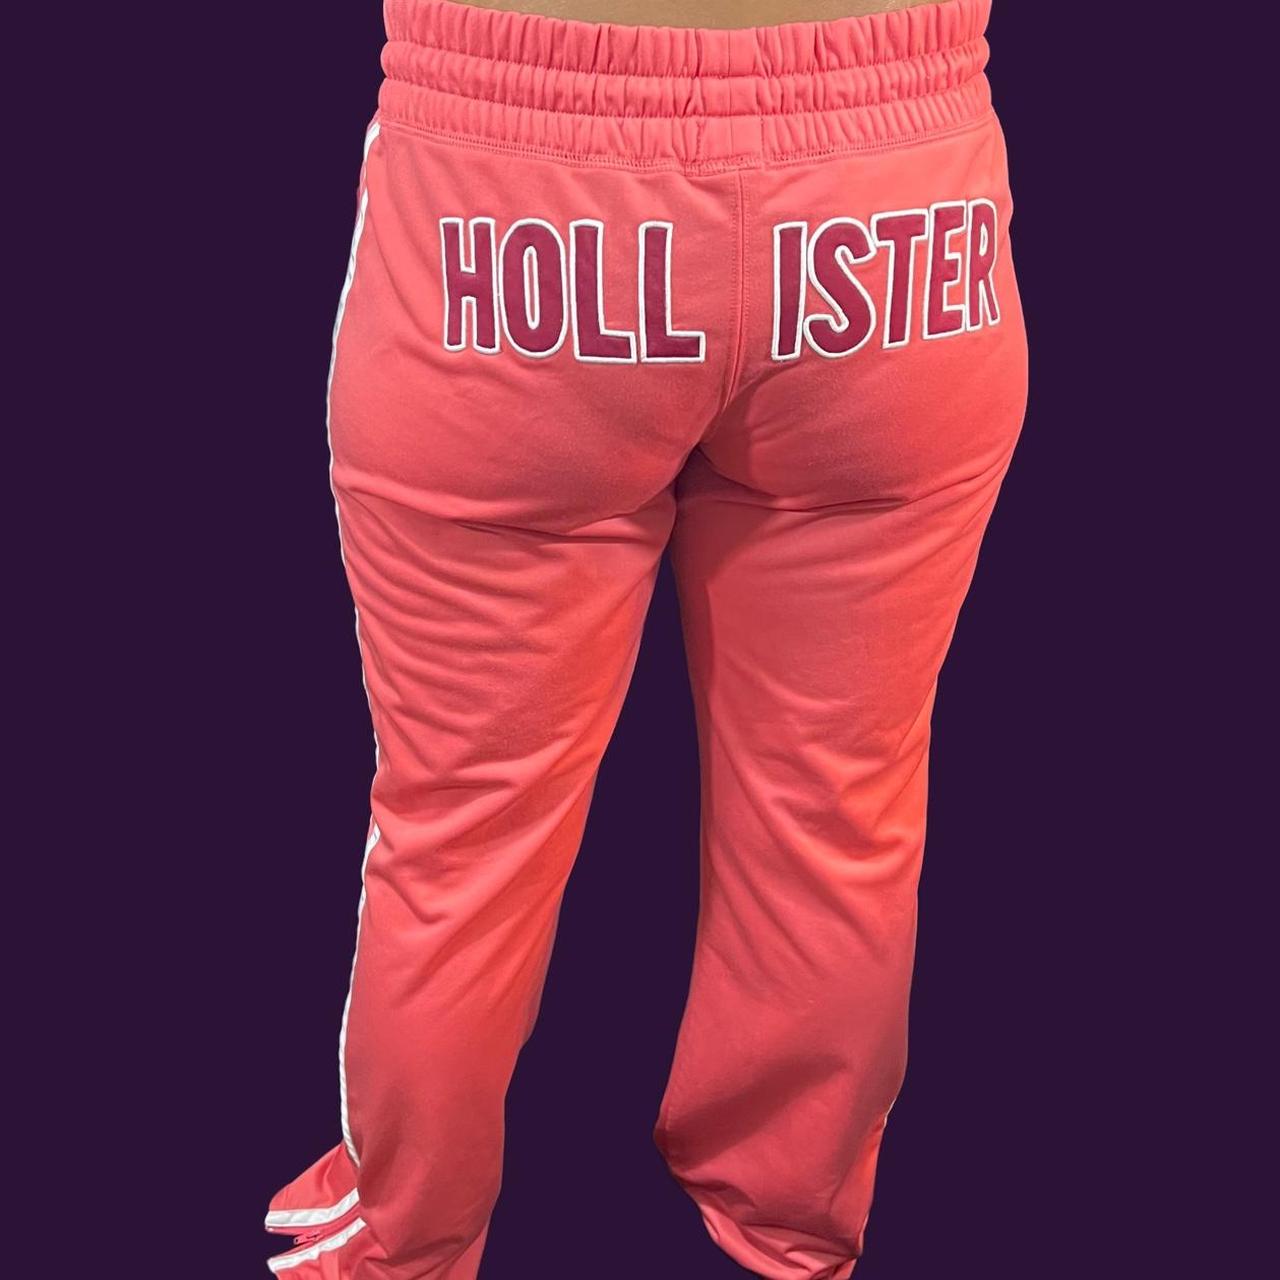 hollister sweatpants women's size small #sweats - Depop